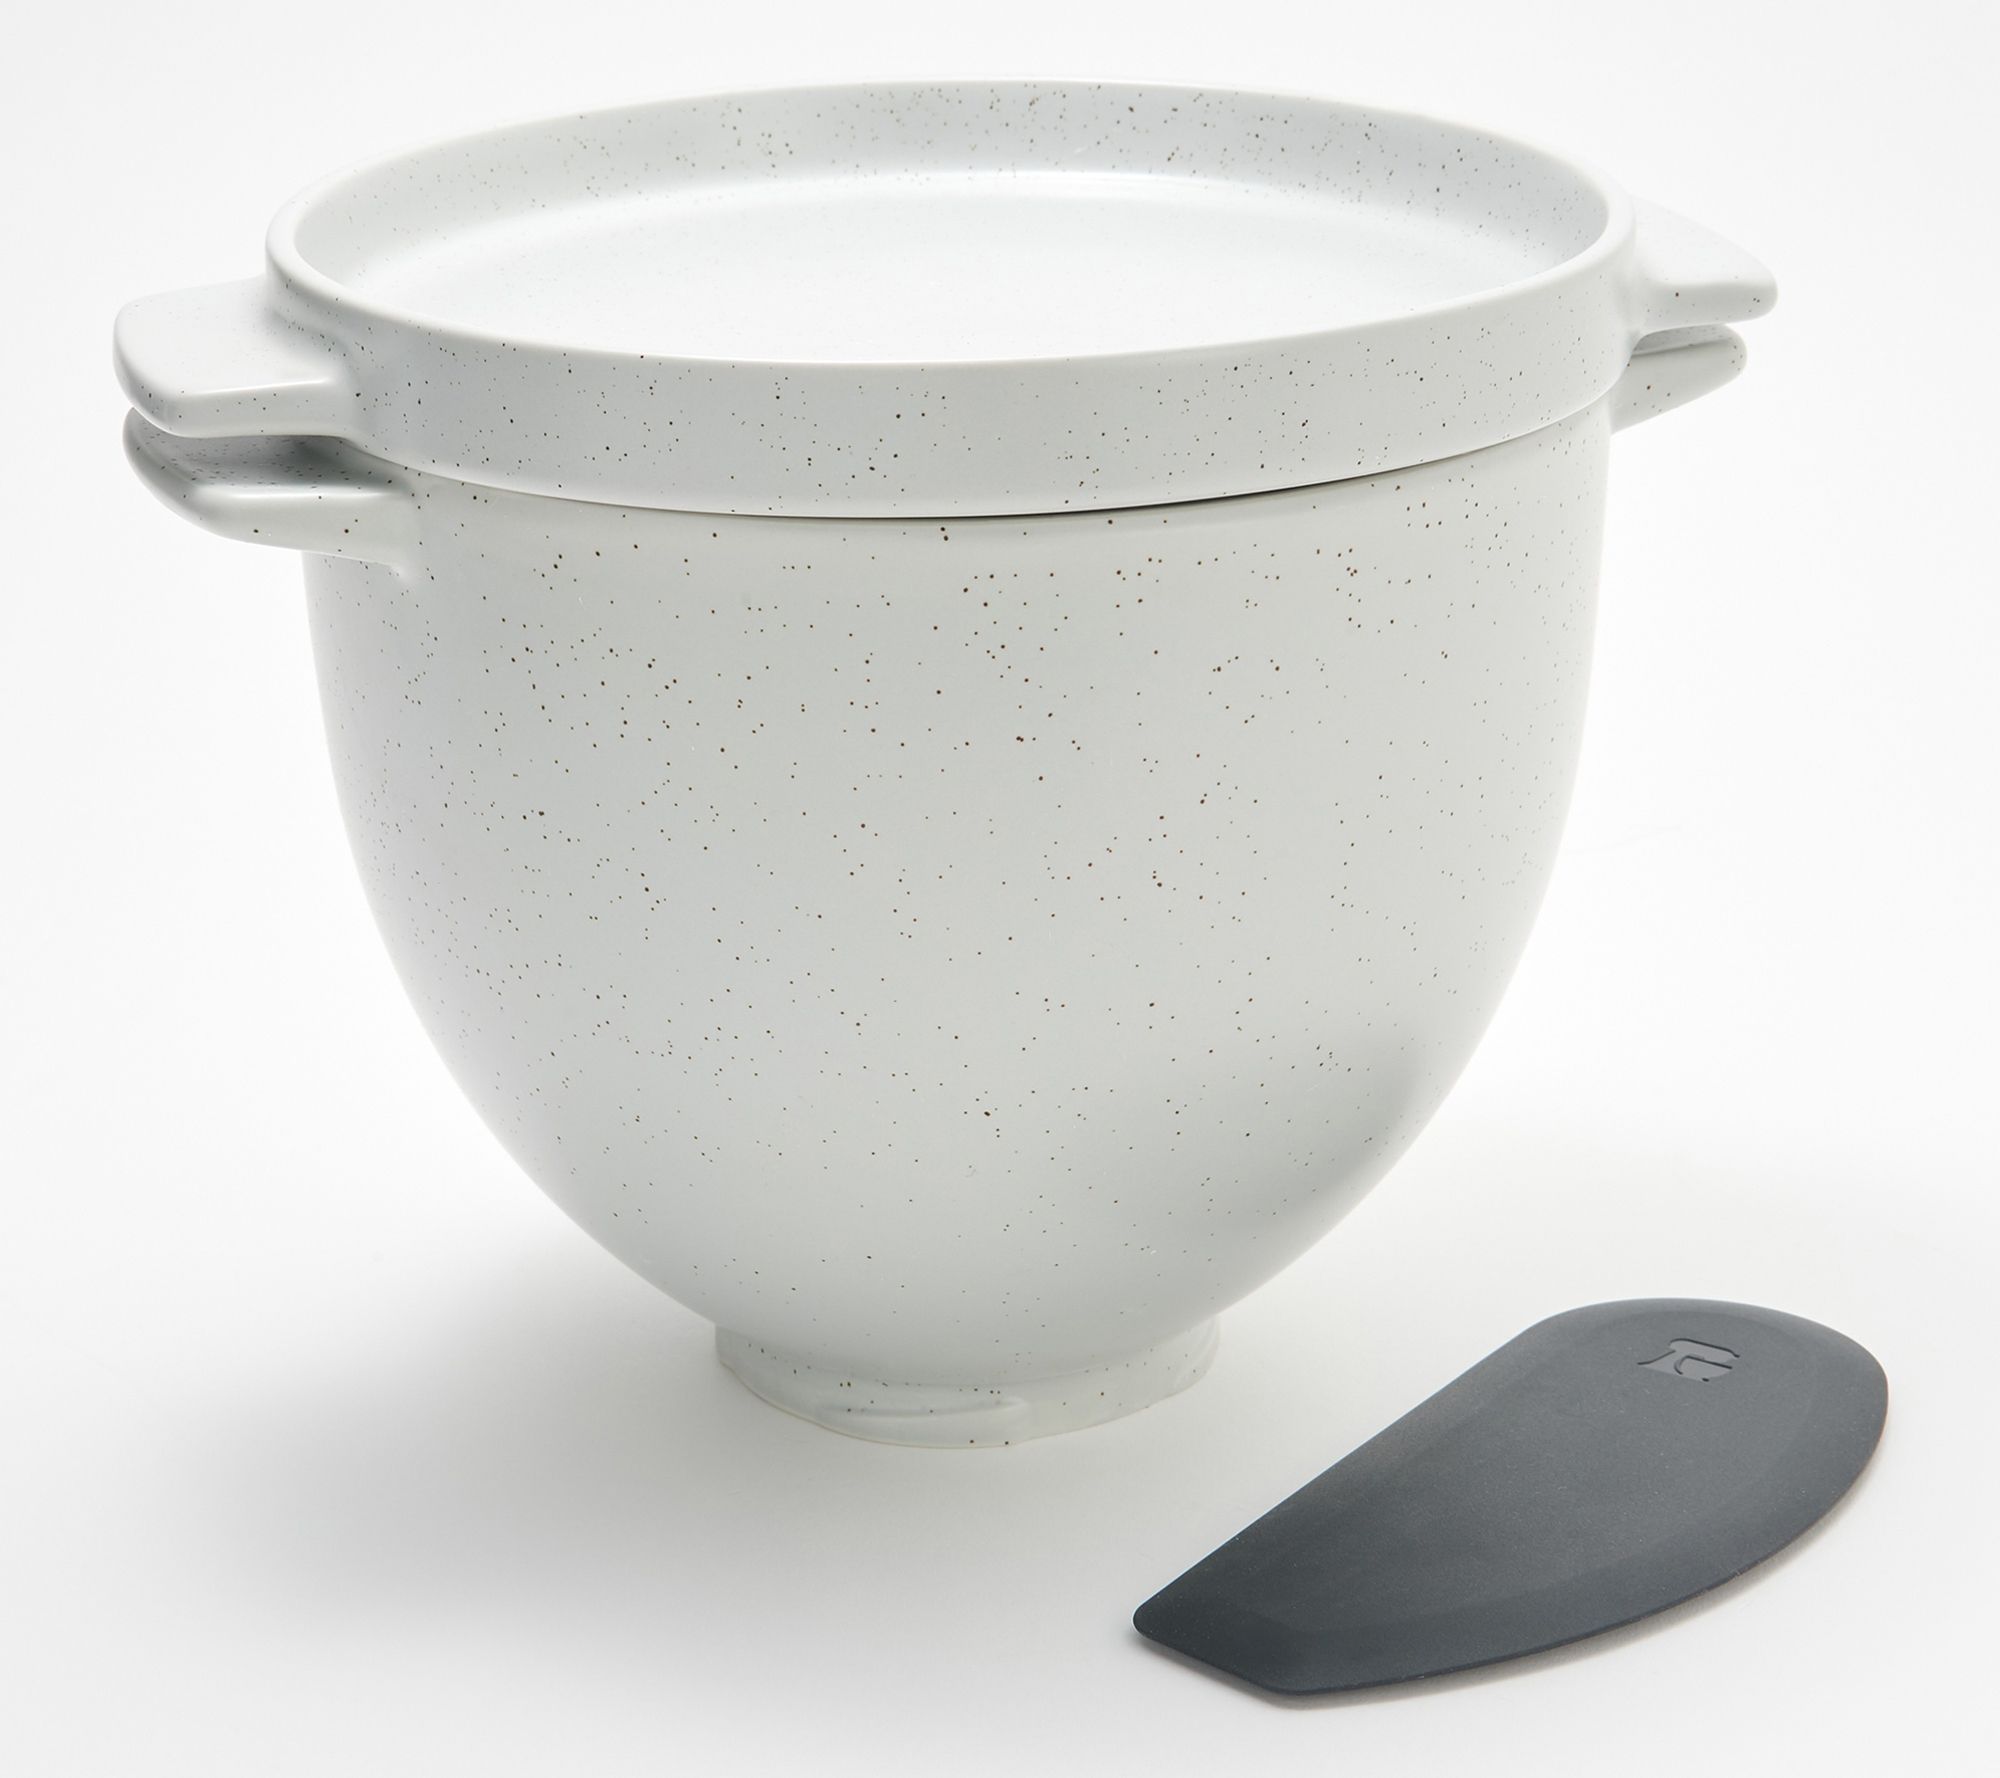 KitchenAid 5-qt Ceramic Bread Bowl with Lid & Dough Scraper - QVC.com | QVC